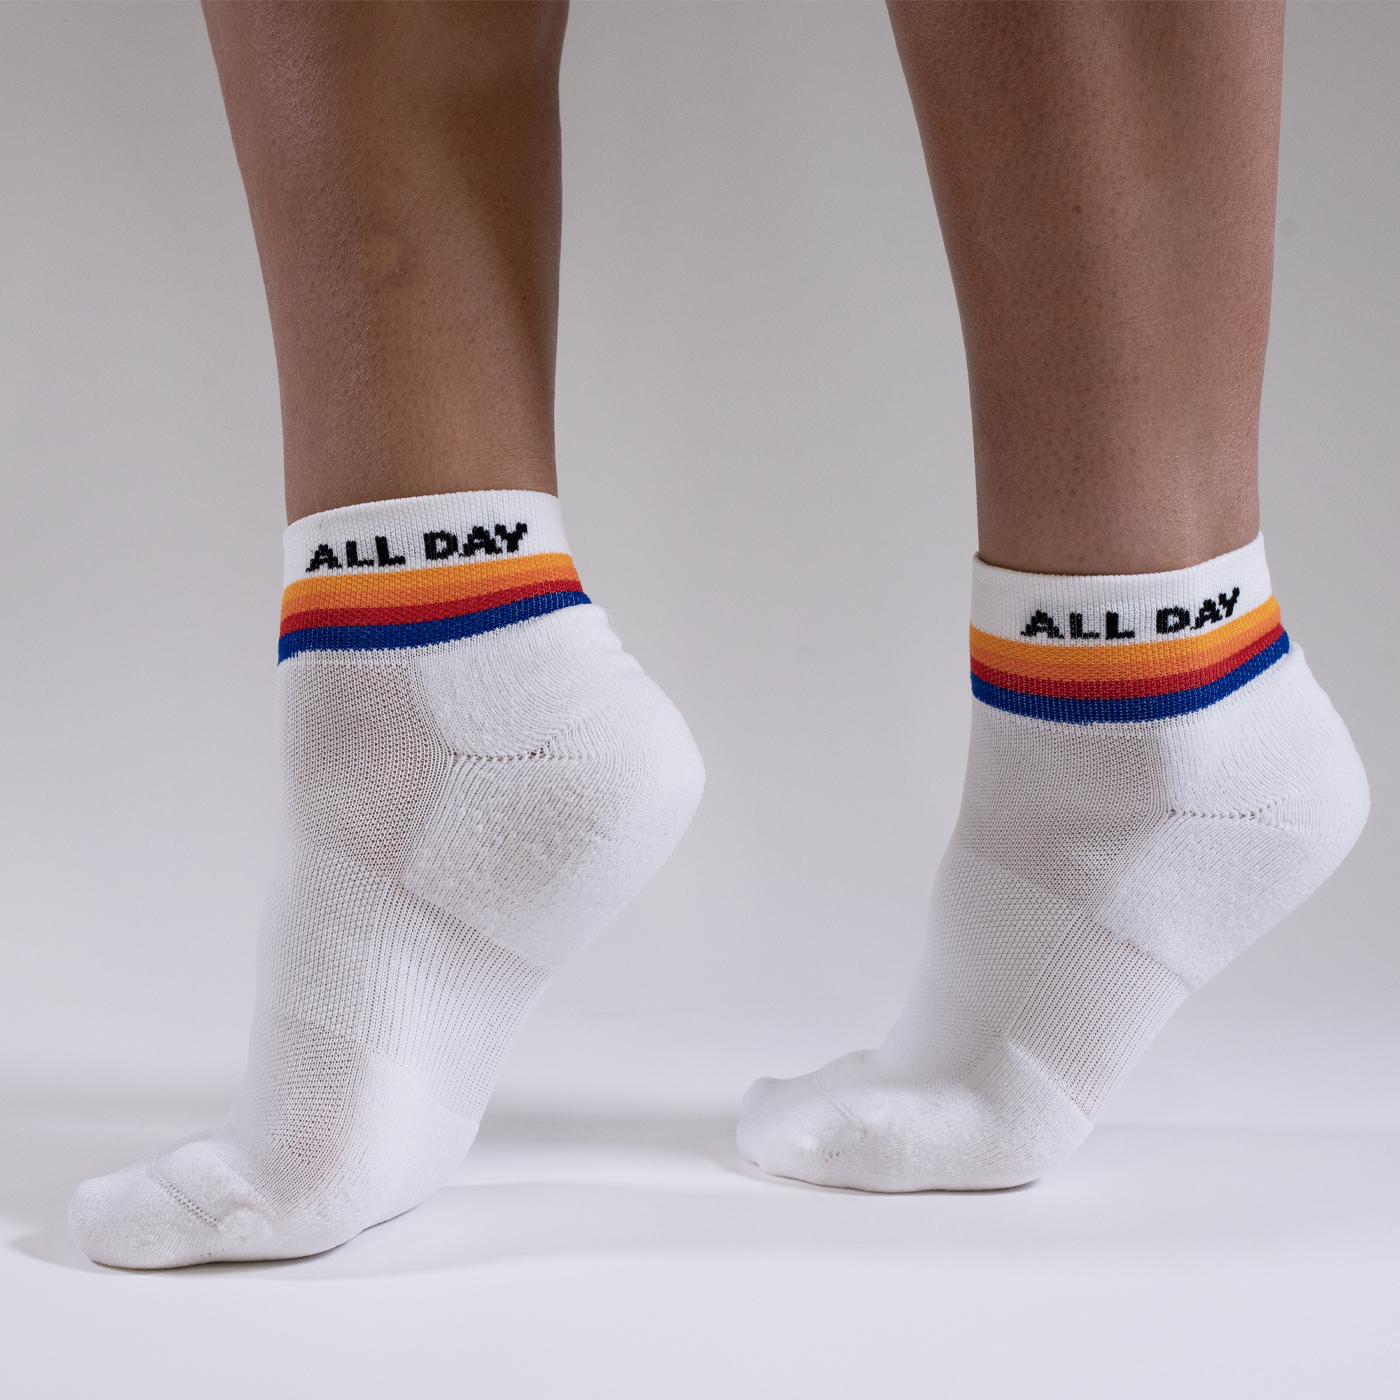 All Day Quarter Length Sock